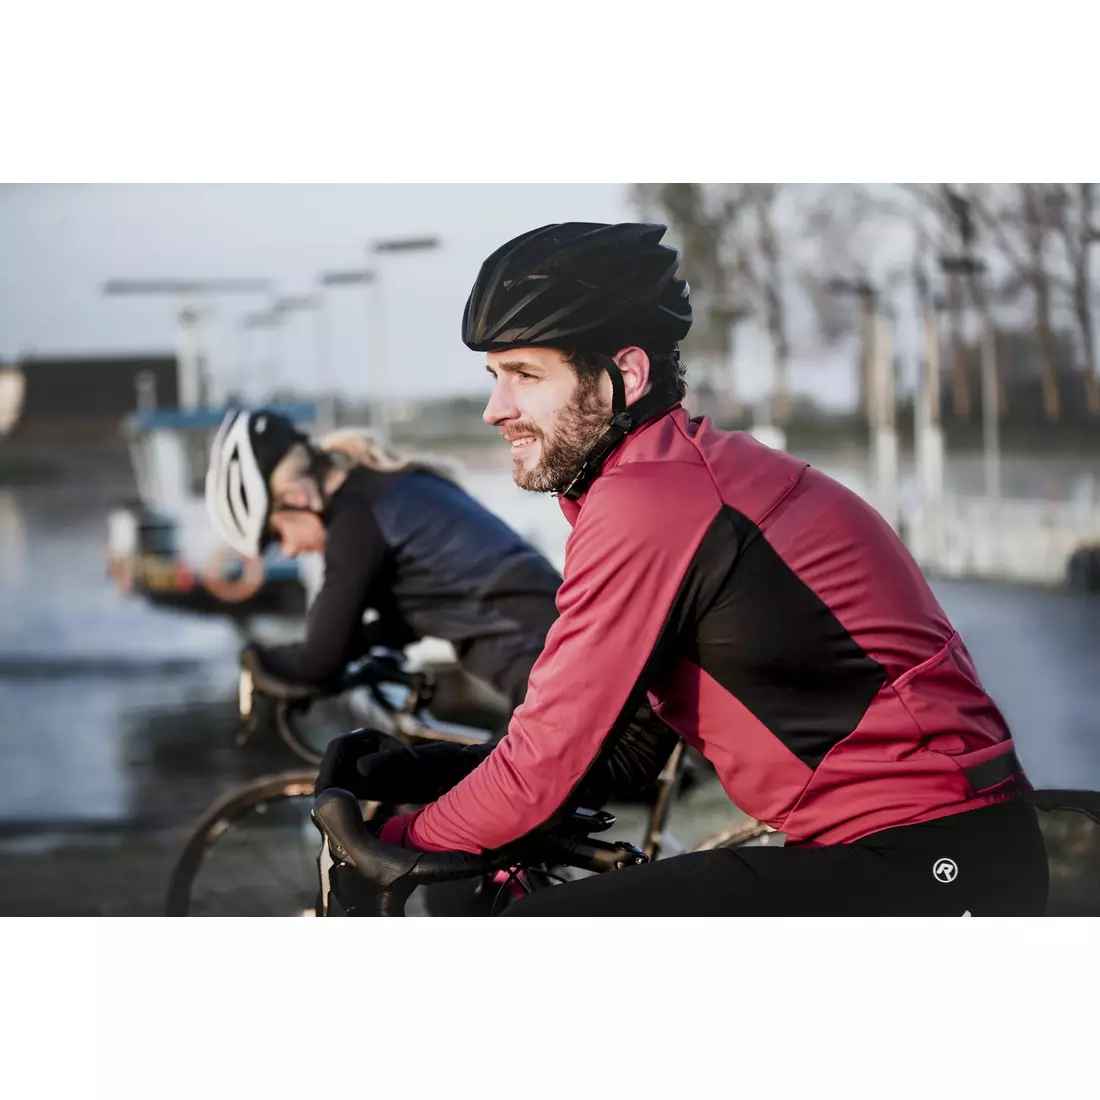 ROGELLI men's cycling jacket BARRIER maroon 